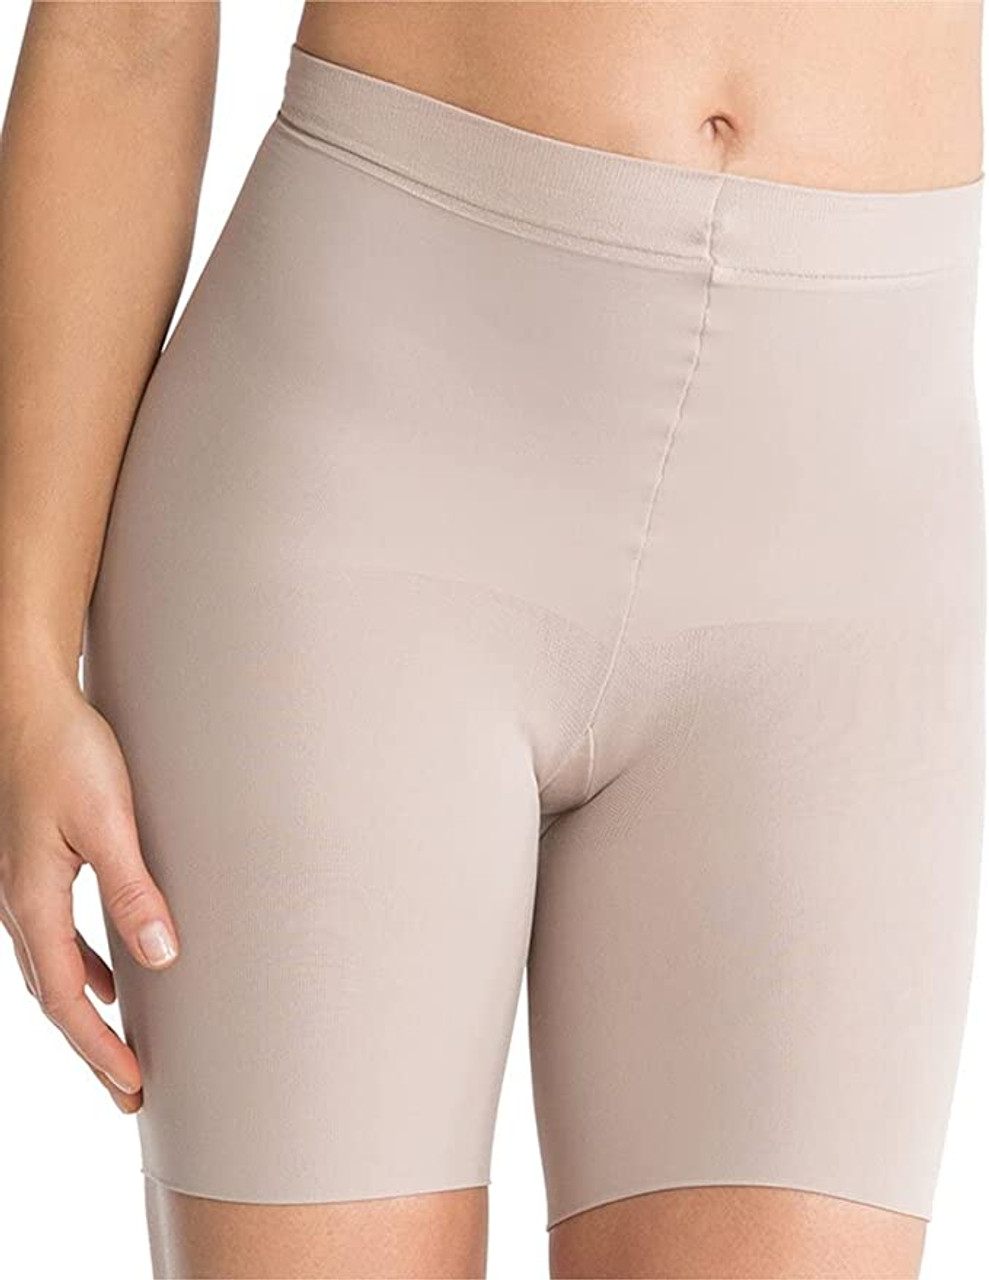 Buy Spanx Womens Power Series Higher Power Panties Size Medium in Black at